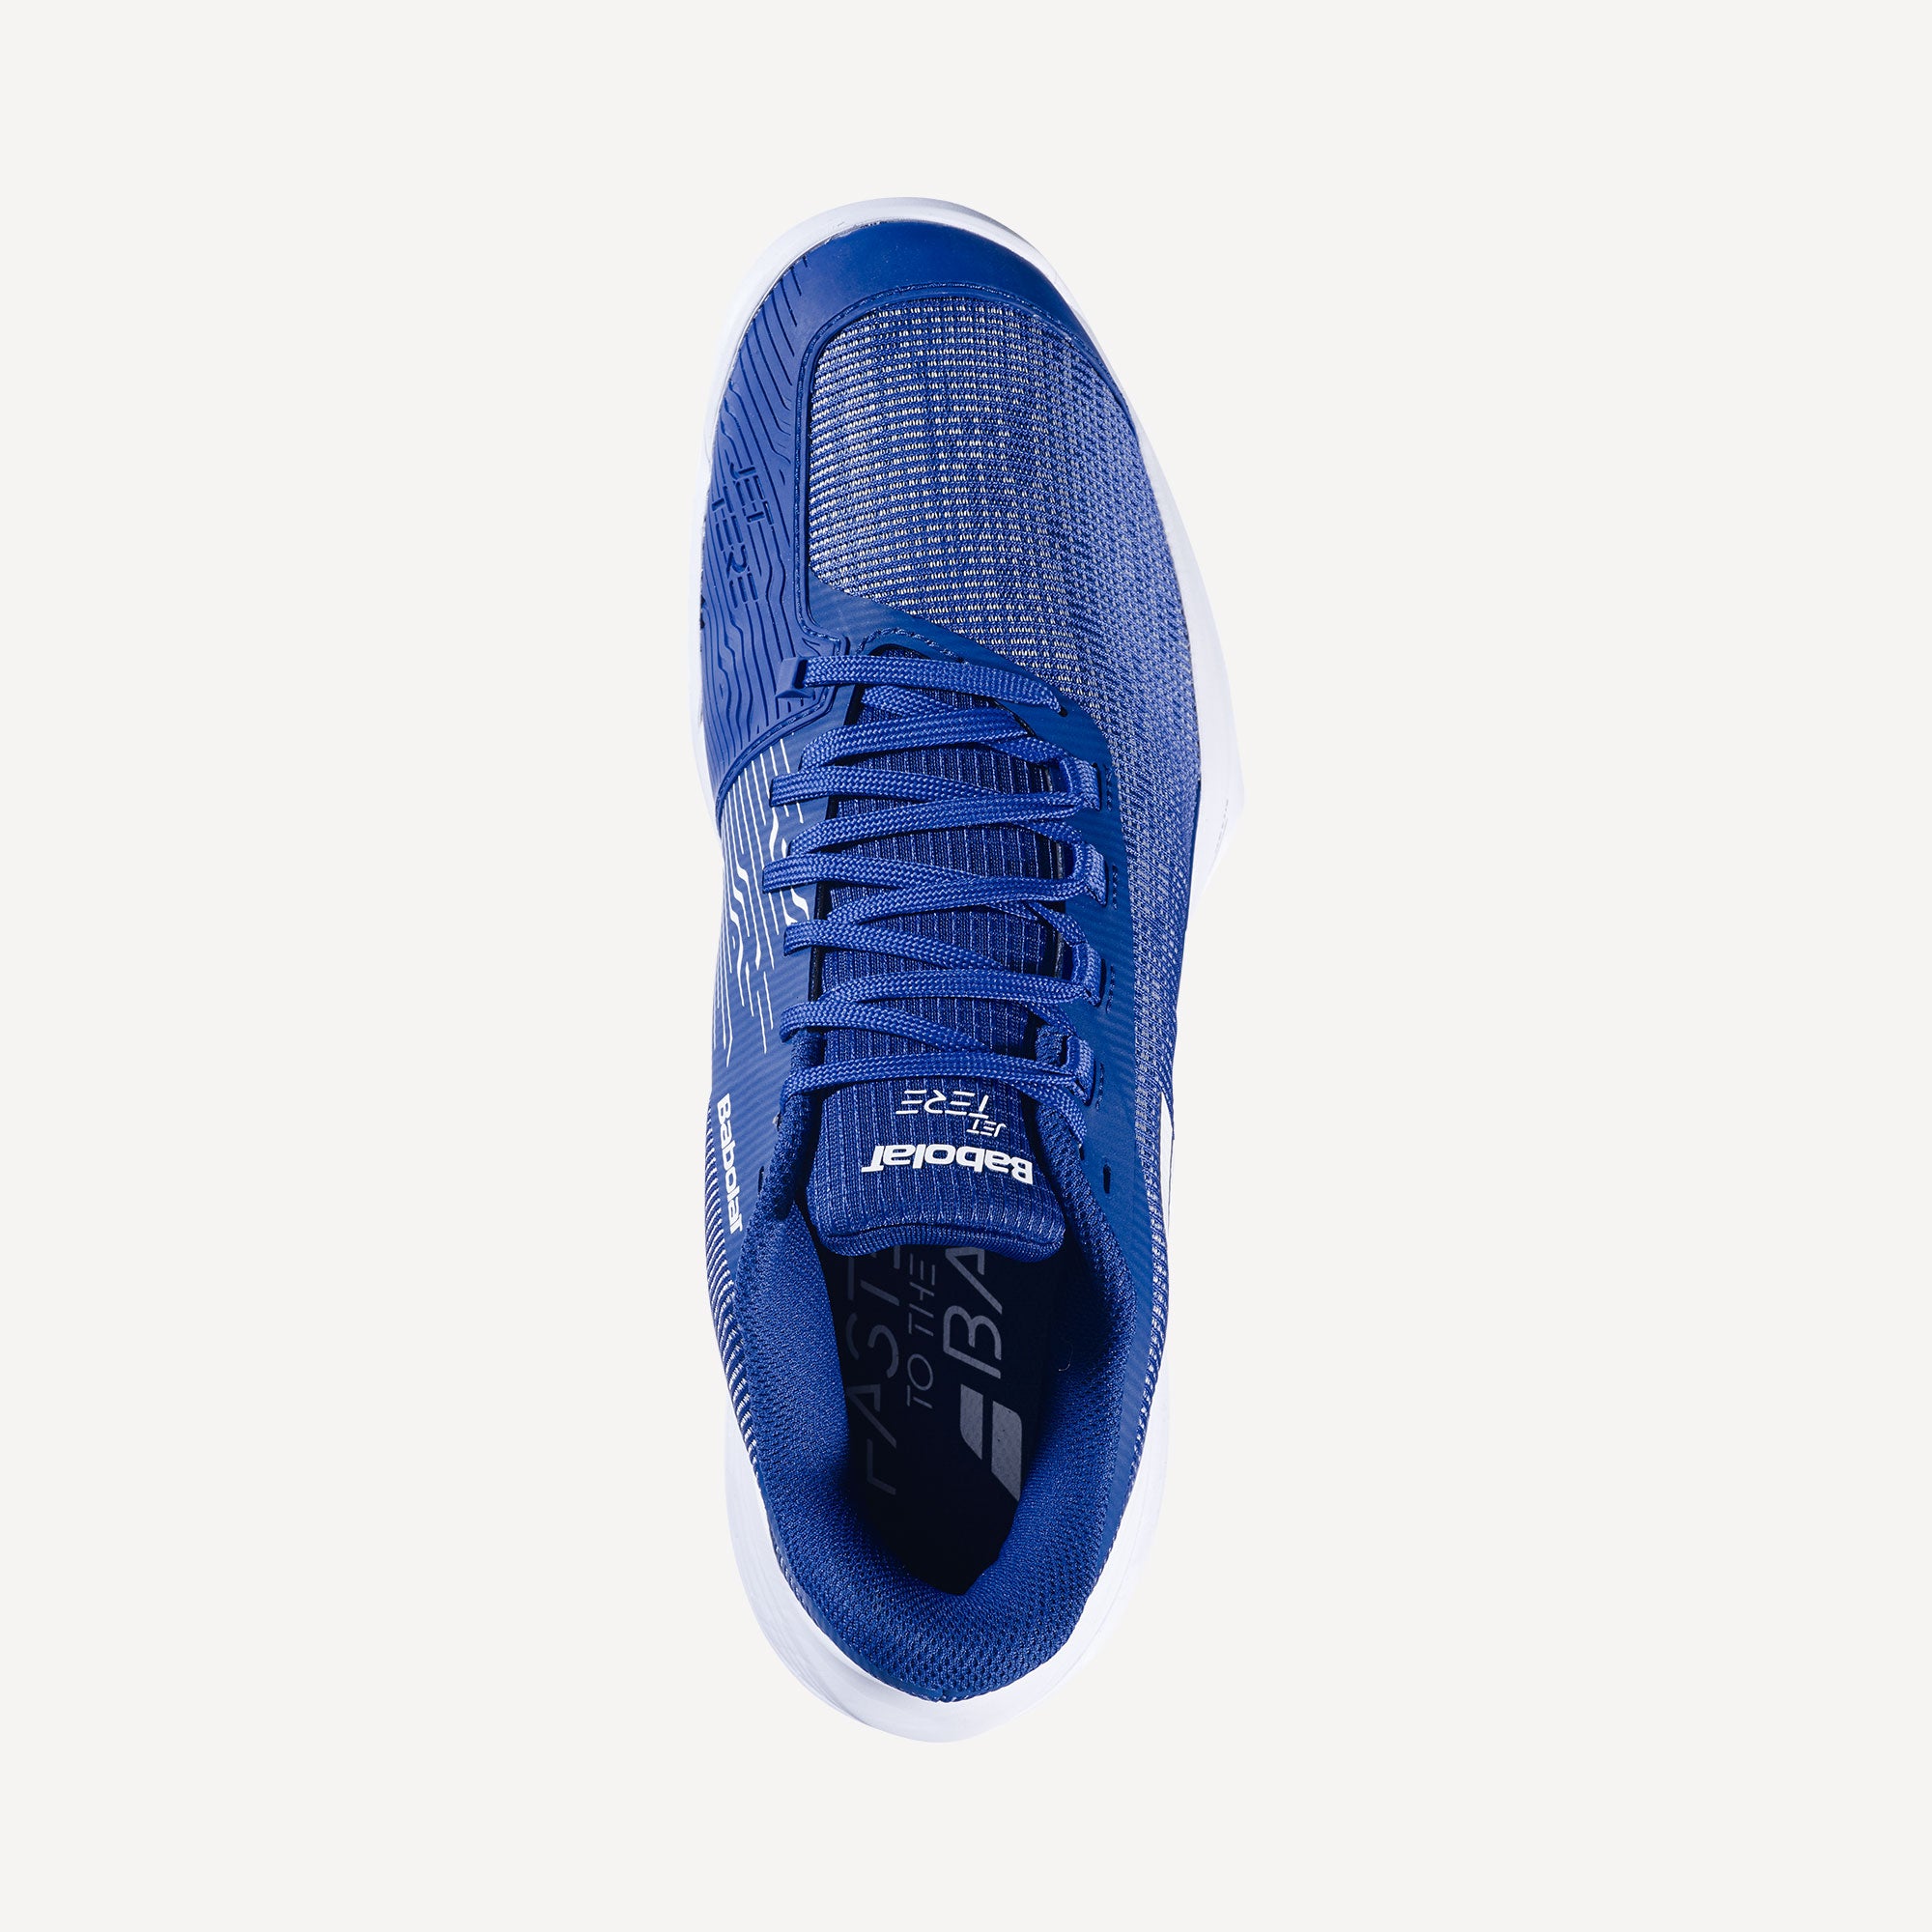 Babolat Jet Tere Men's Clay Court Tennis Shoes - Blue (5)